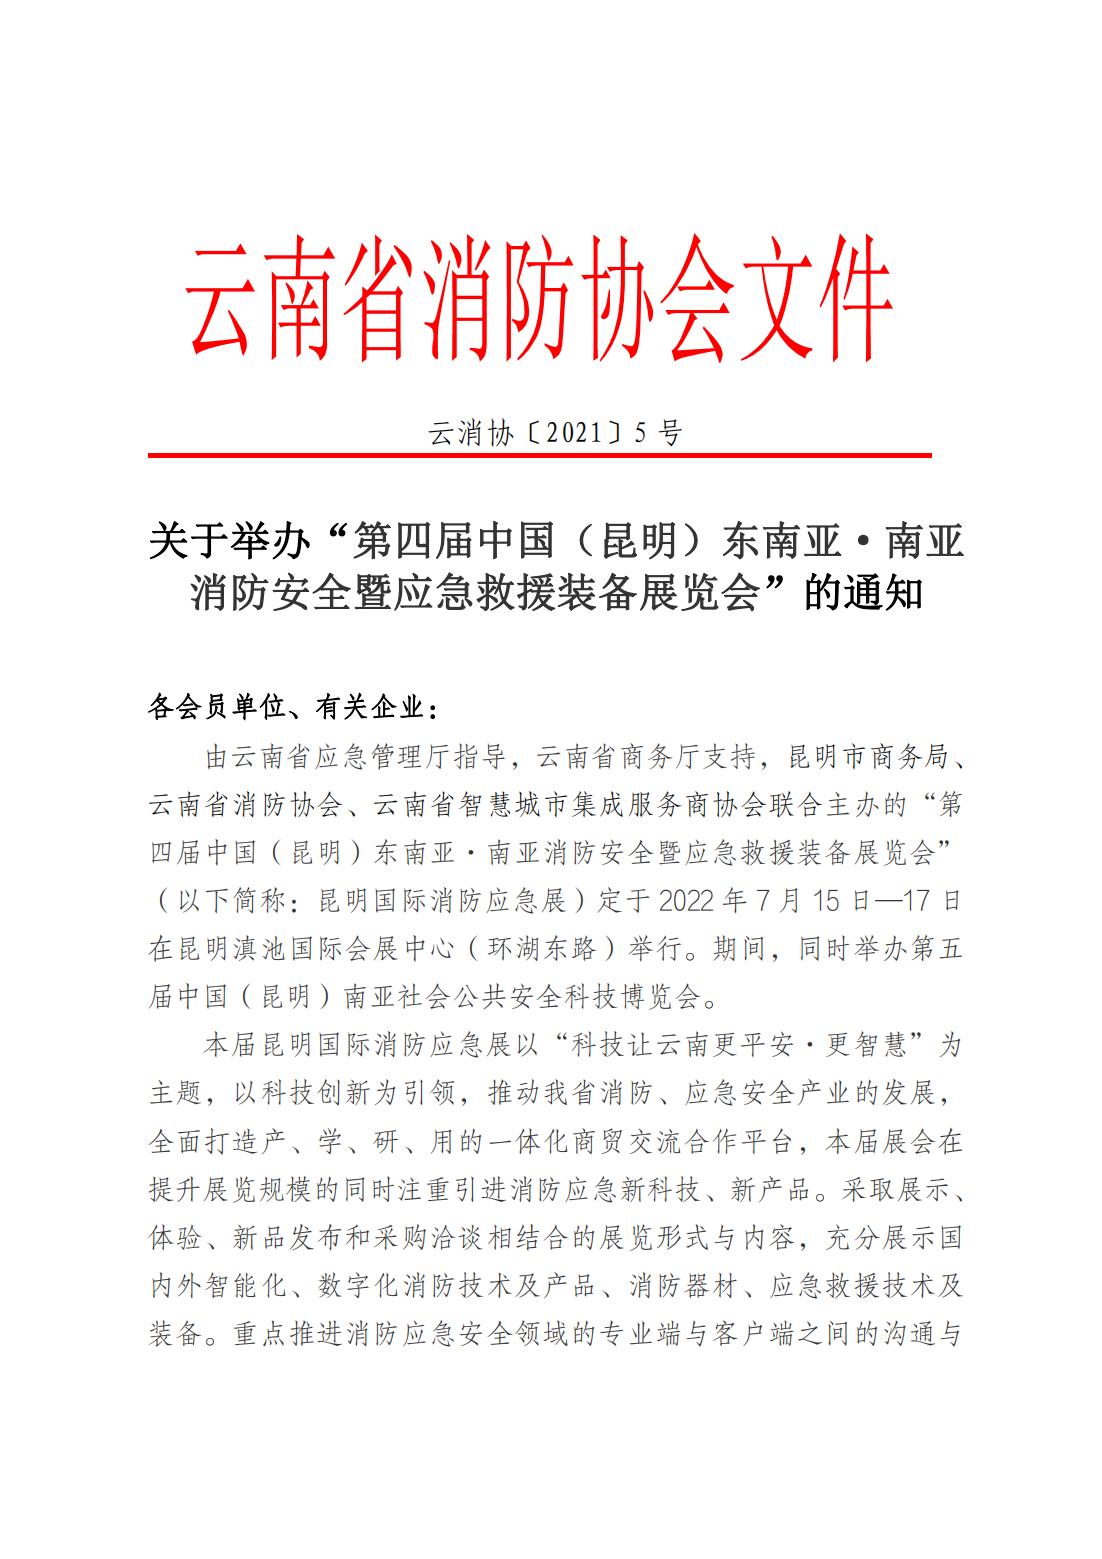 云南省消防协会关于举办“2022第四届昆明国际消防应急展”的通知